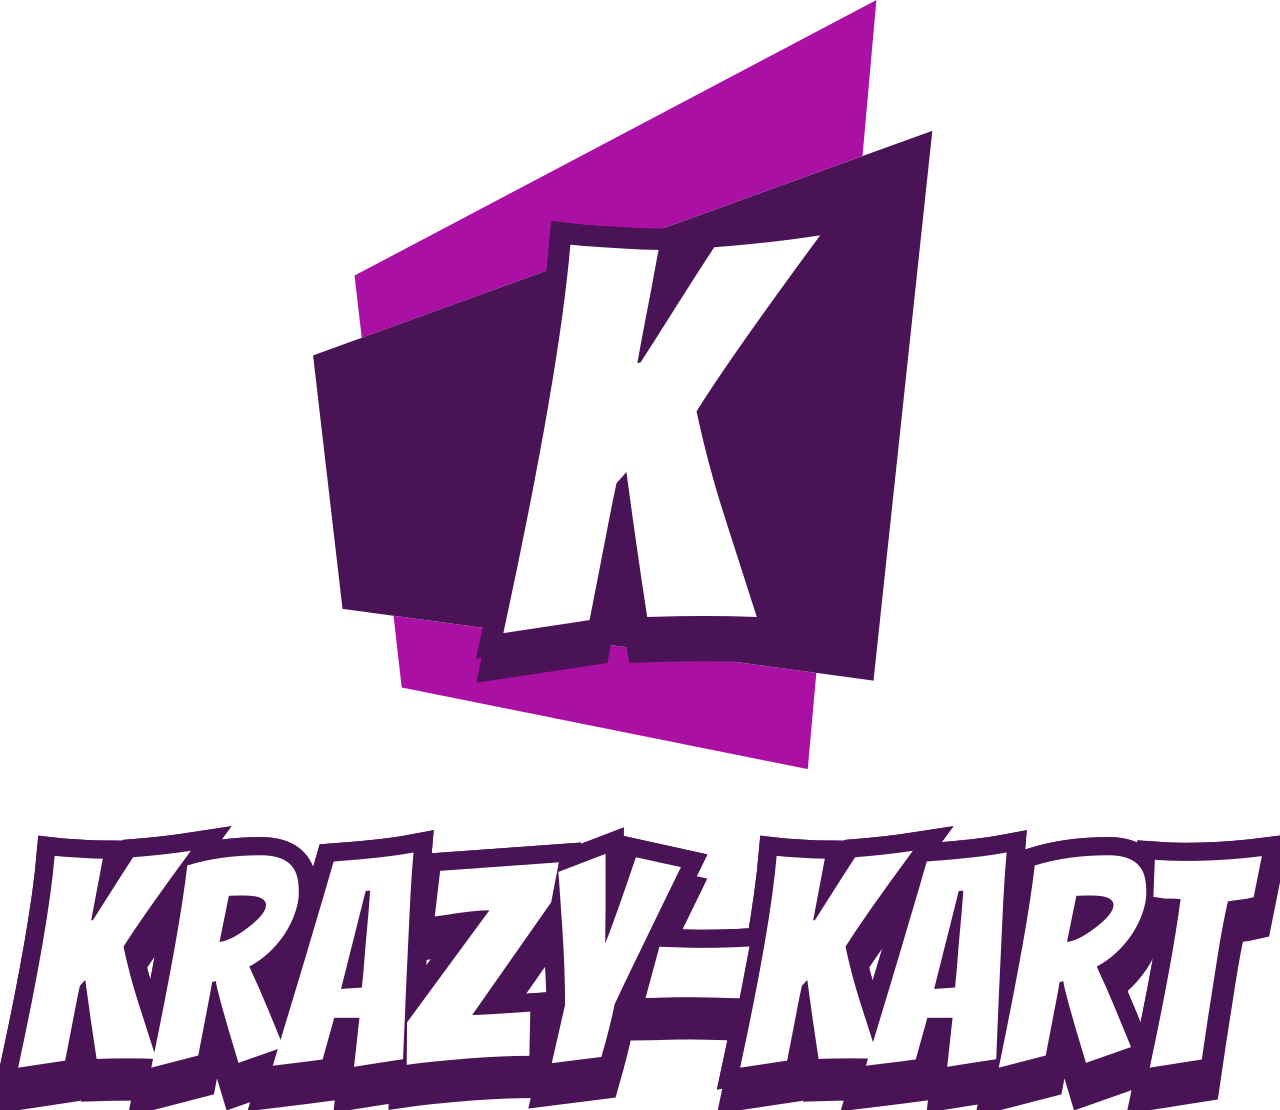 Krazy-Kart's logo